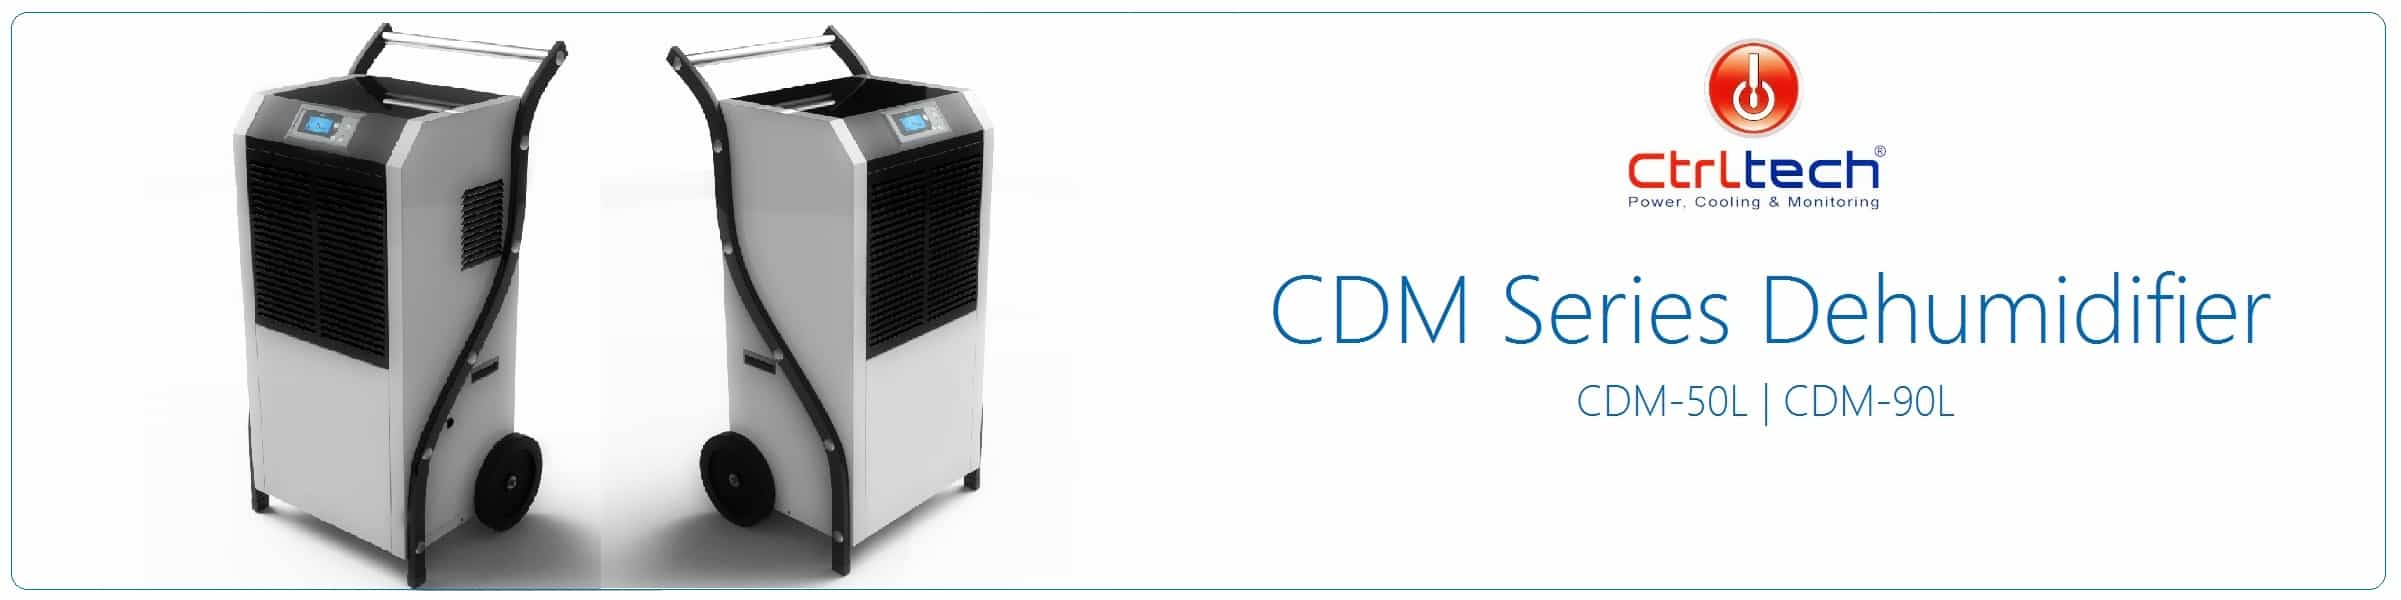 CDM series Industrial dehumidifier.